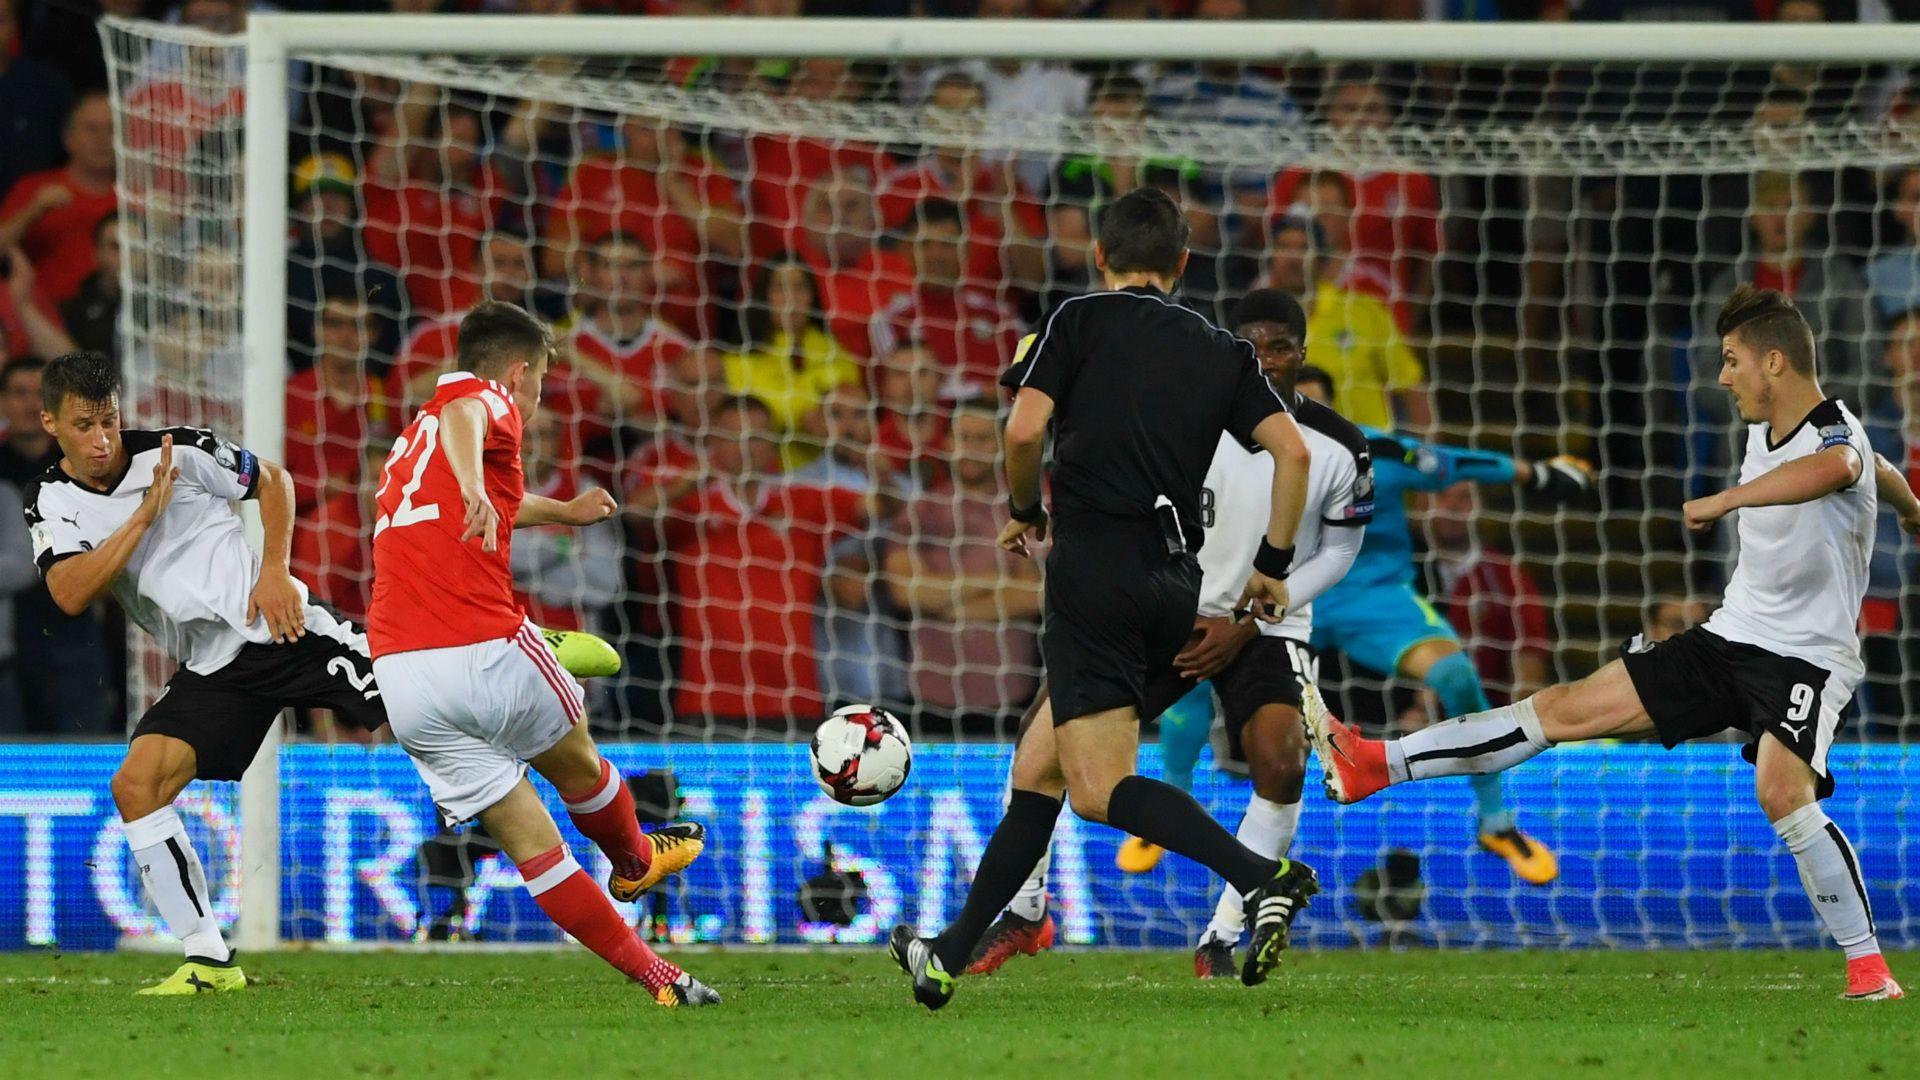 Liverpool news: Ben Woodburn 'won't sleep' after stunning goal